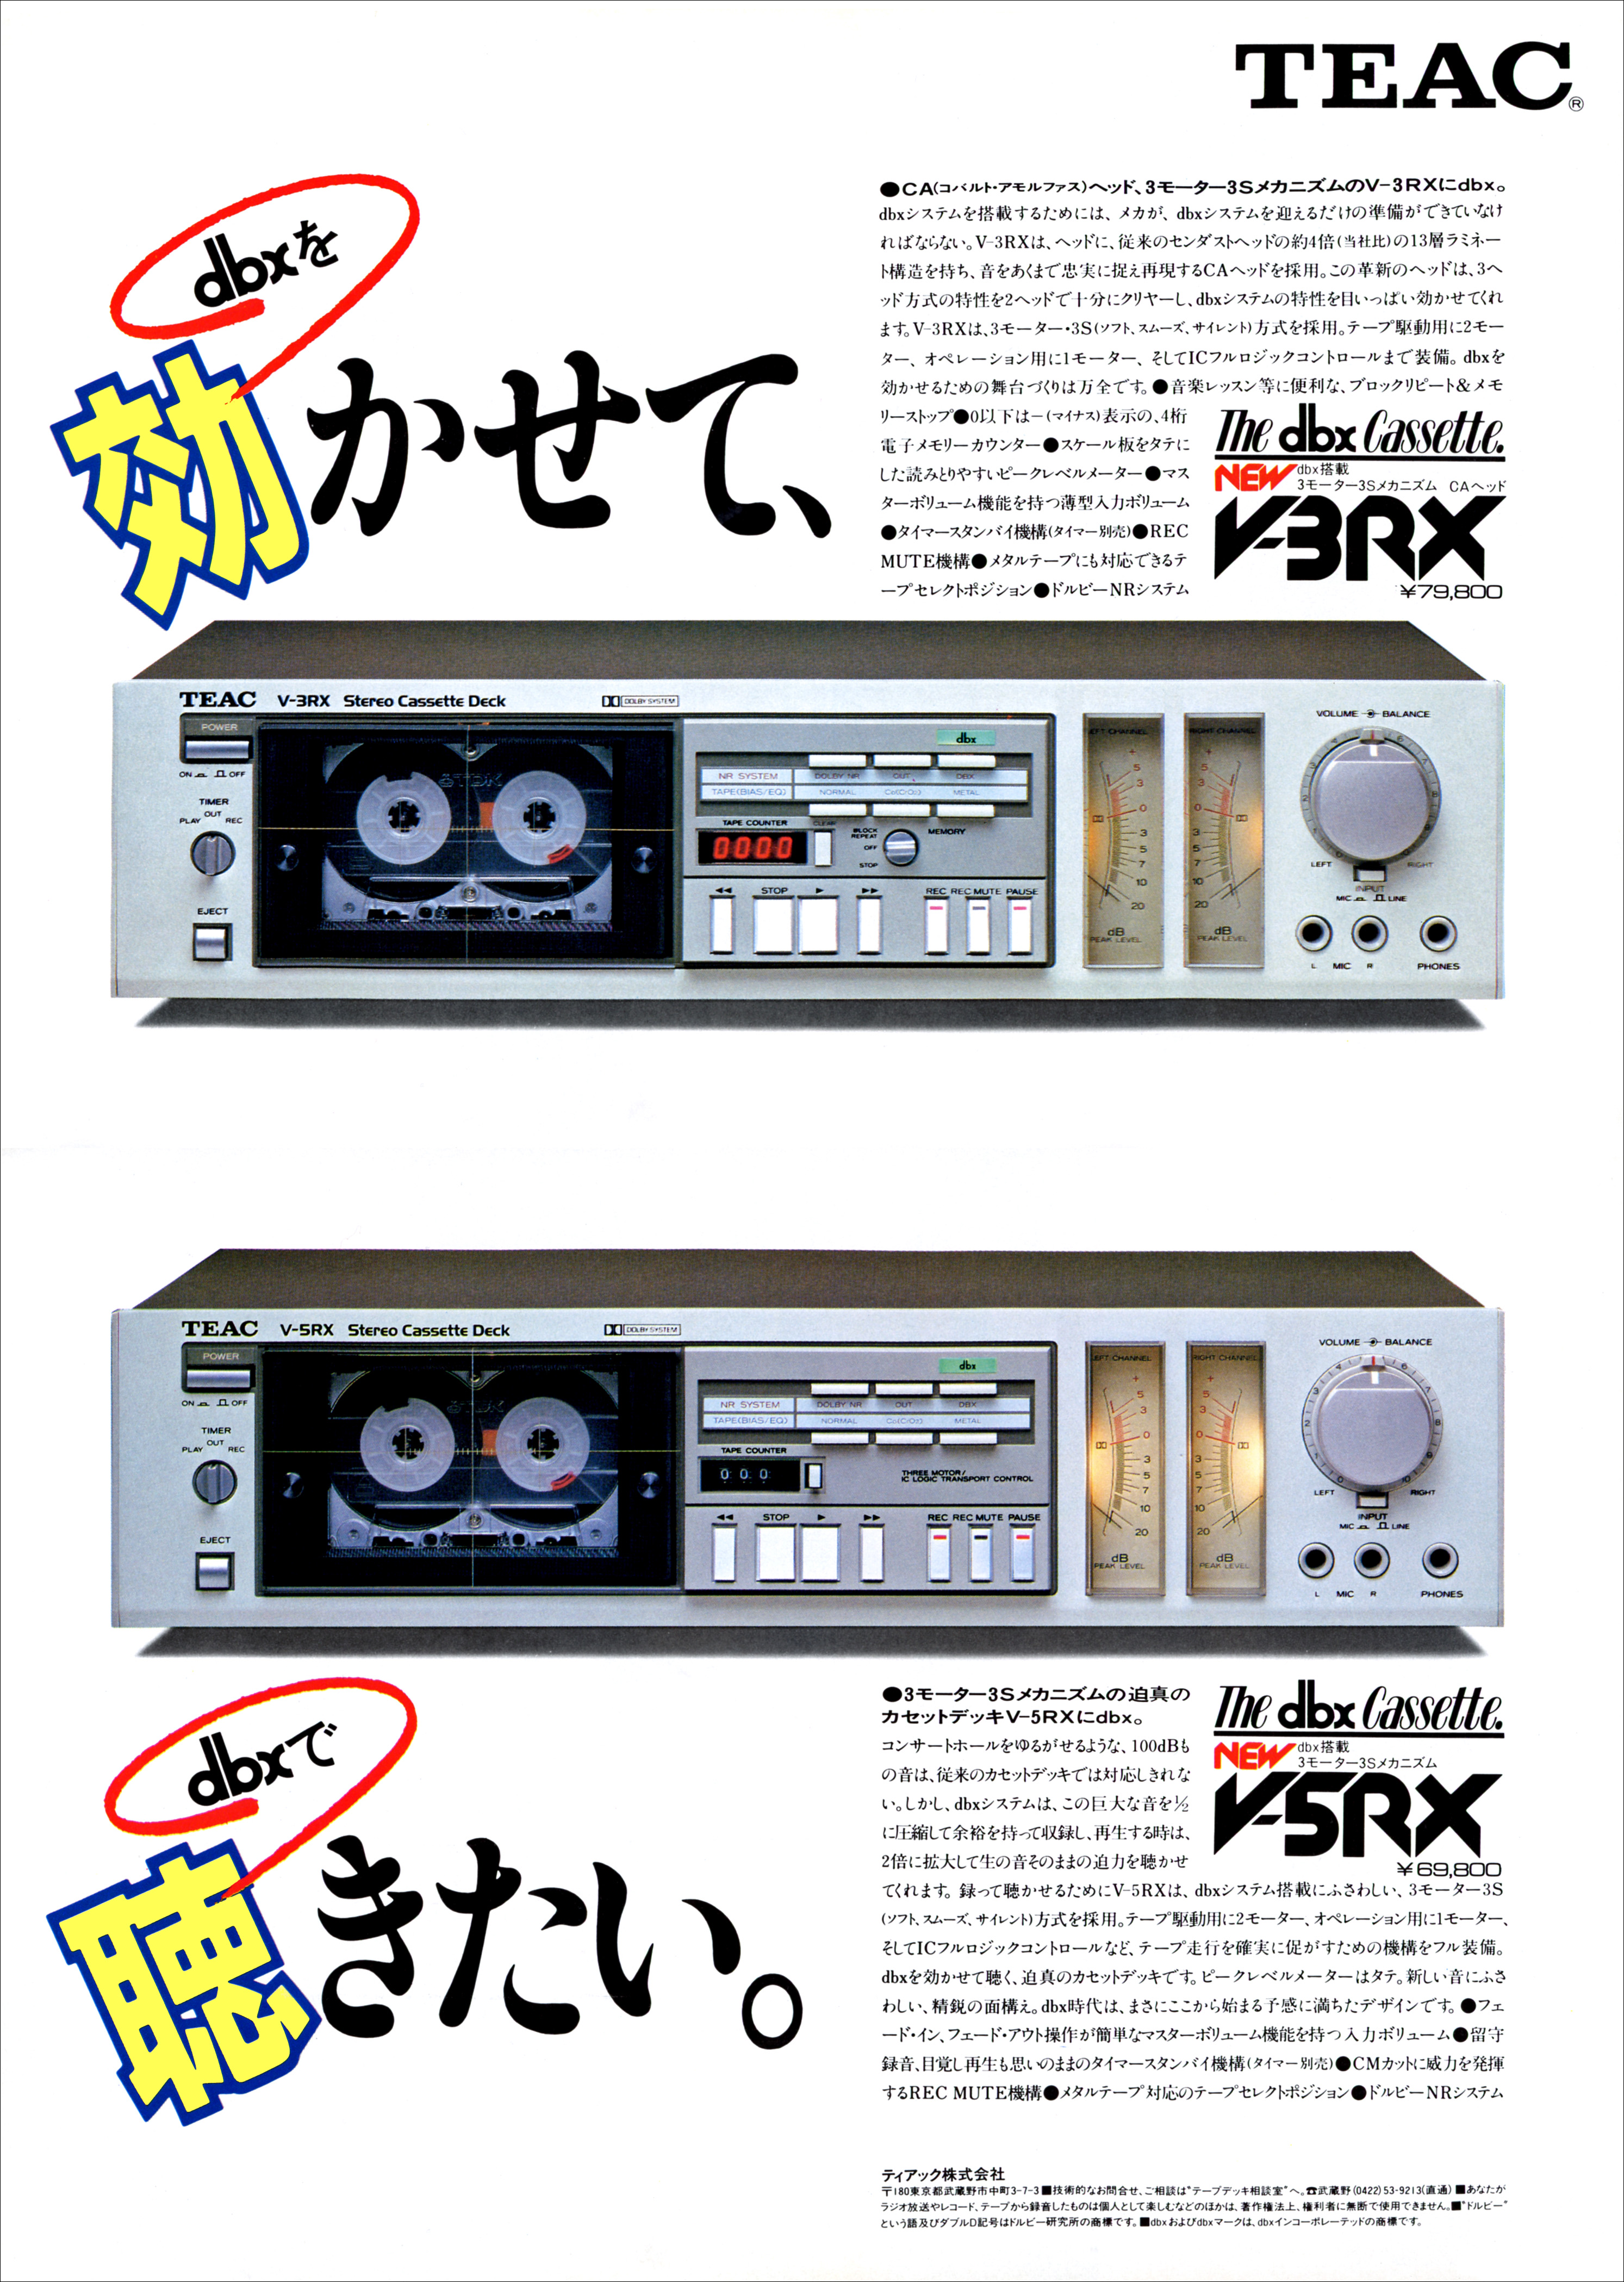 ティアック V-3RX, V-5RX | the re:View (in the past)